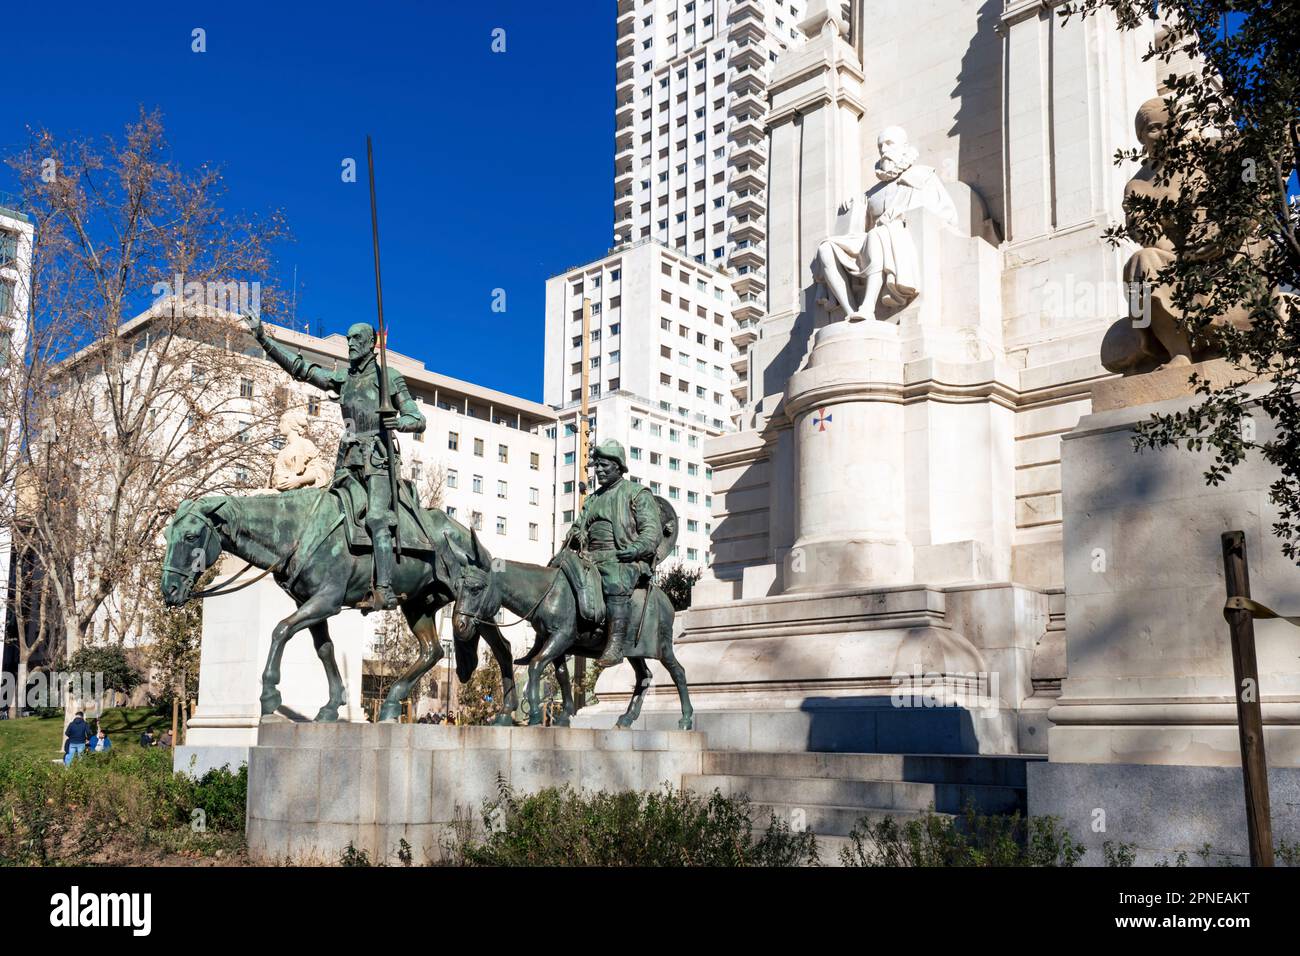 Particolare delle sculture di Don Chisciotte e Sancho Panza. Monumento a Miguel de Cervantes. Plaza de España - Piazza di Spagna. Madrid, Comunidad de Madrid Foto Stock